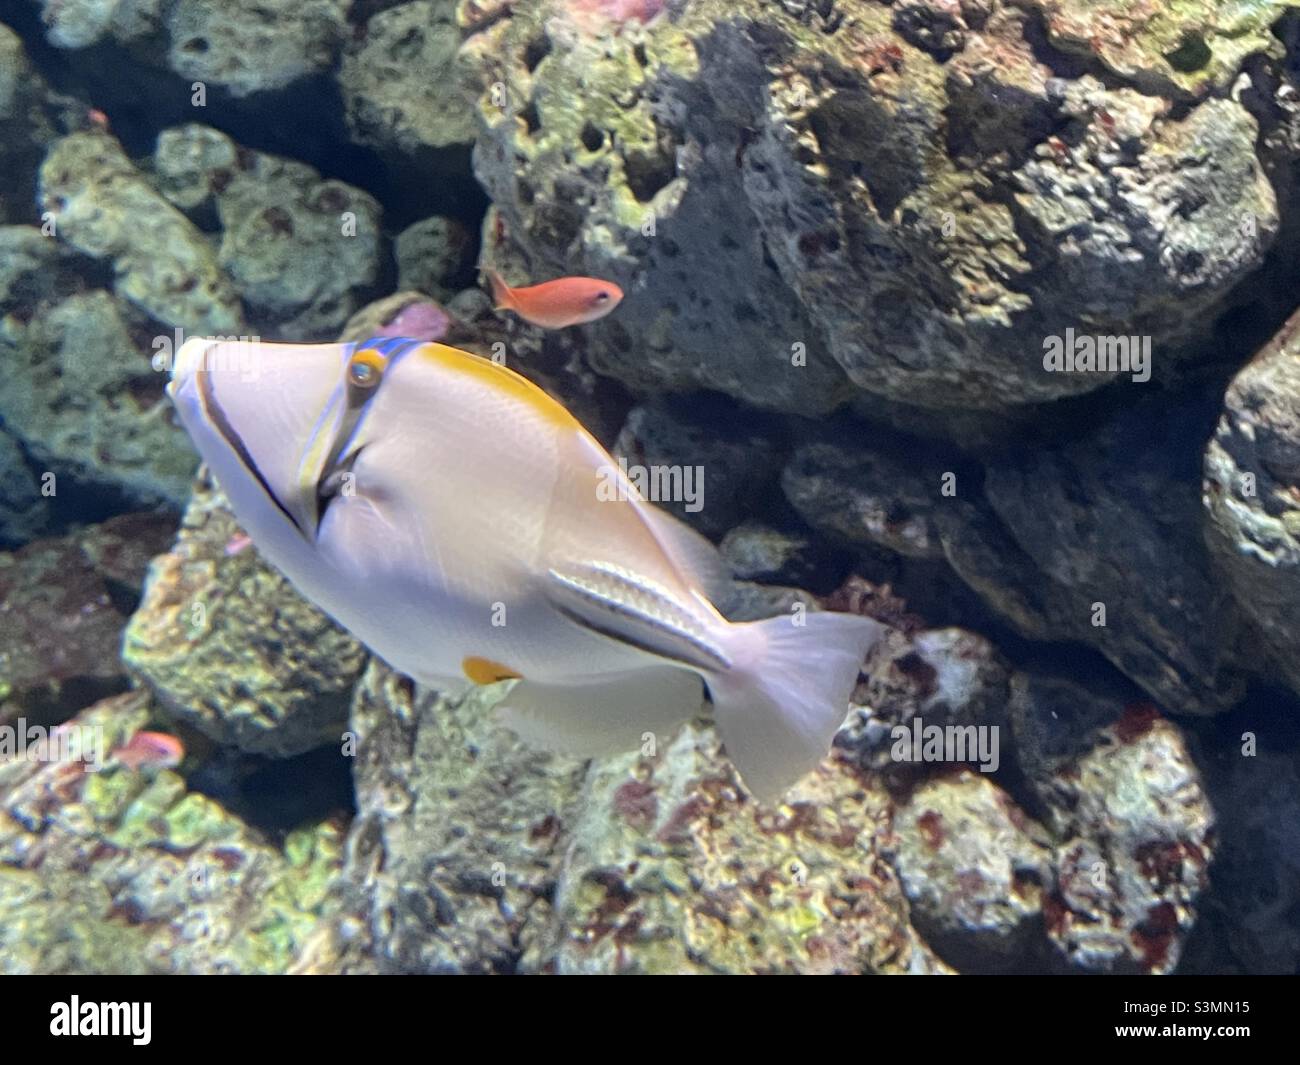 Tang fish in a salt water aquarium Stock Photo